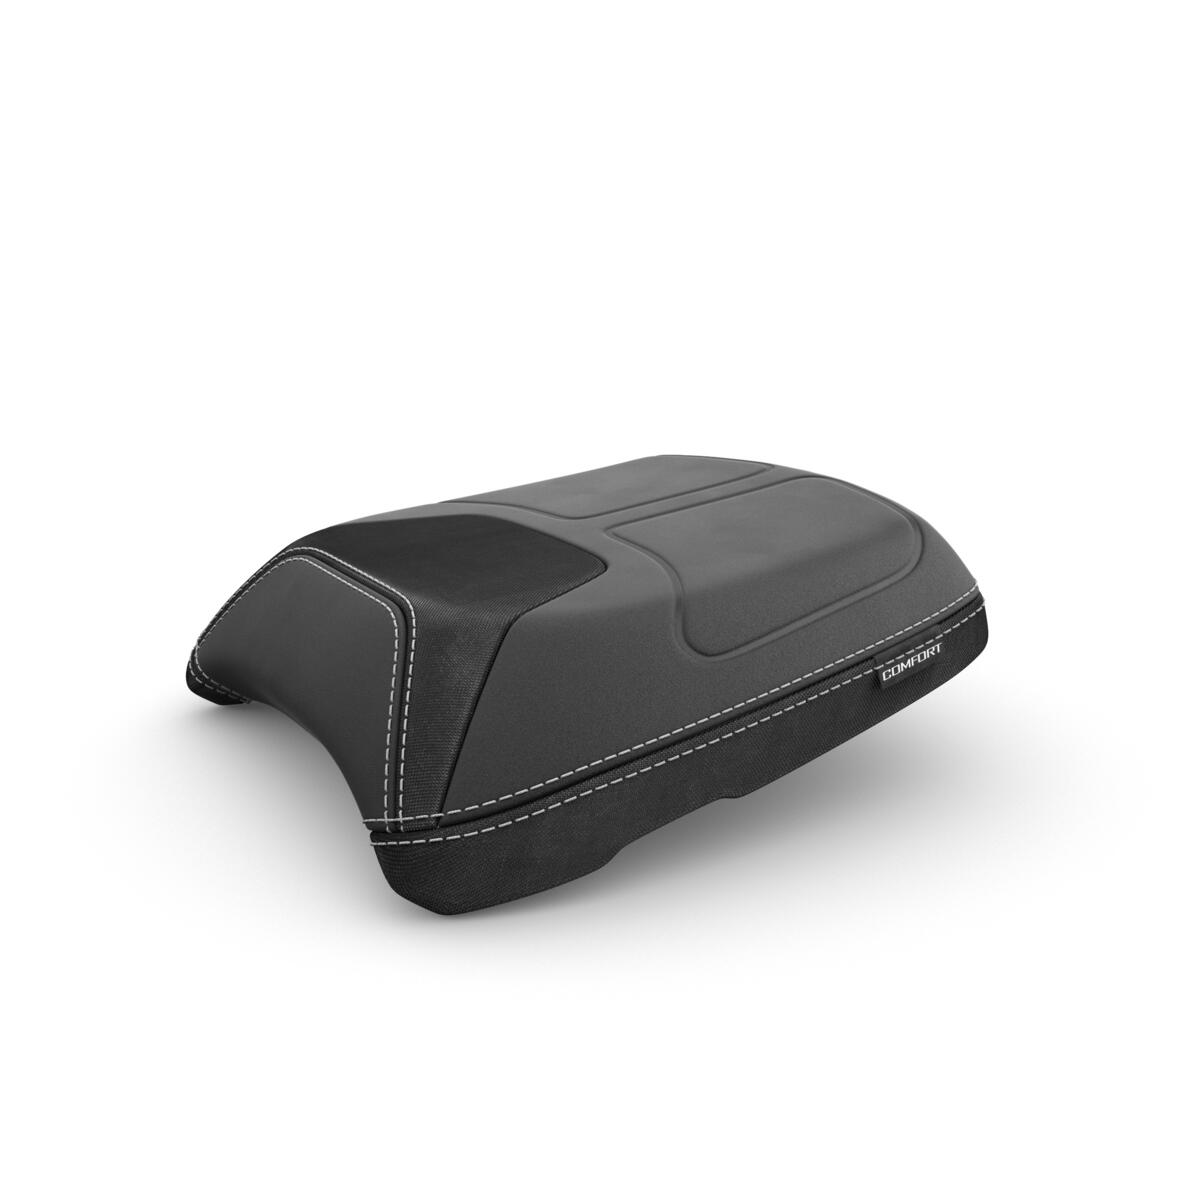 Beifahrersitz für die TRACER 9 zur Erhöhung des Fahrkomforts bei langen Touren. Die feste Schaumstoffbasis und die Taschen mit weichen Oberflächen sorgen dafür, dass Du Tourenfahren zu zweit bestens genießen kannst.